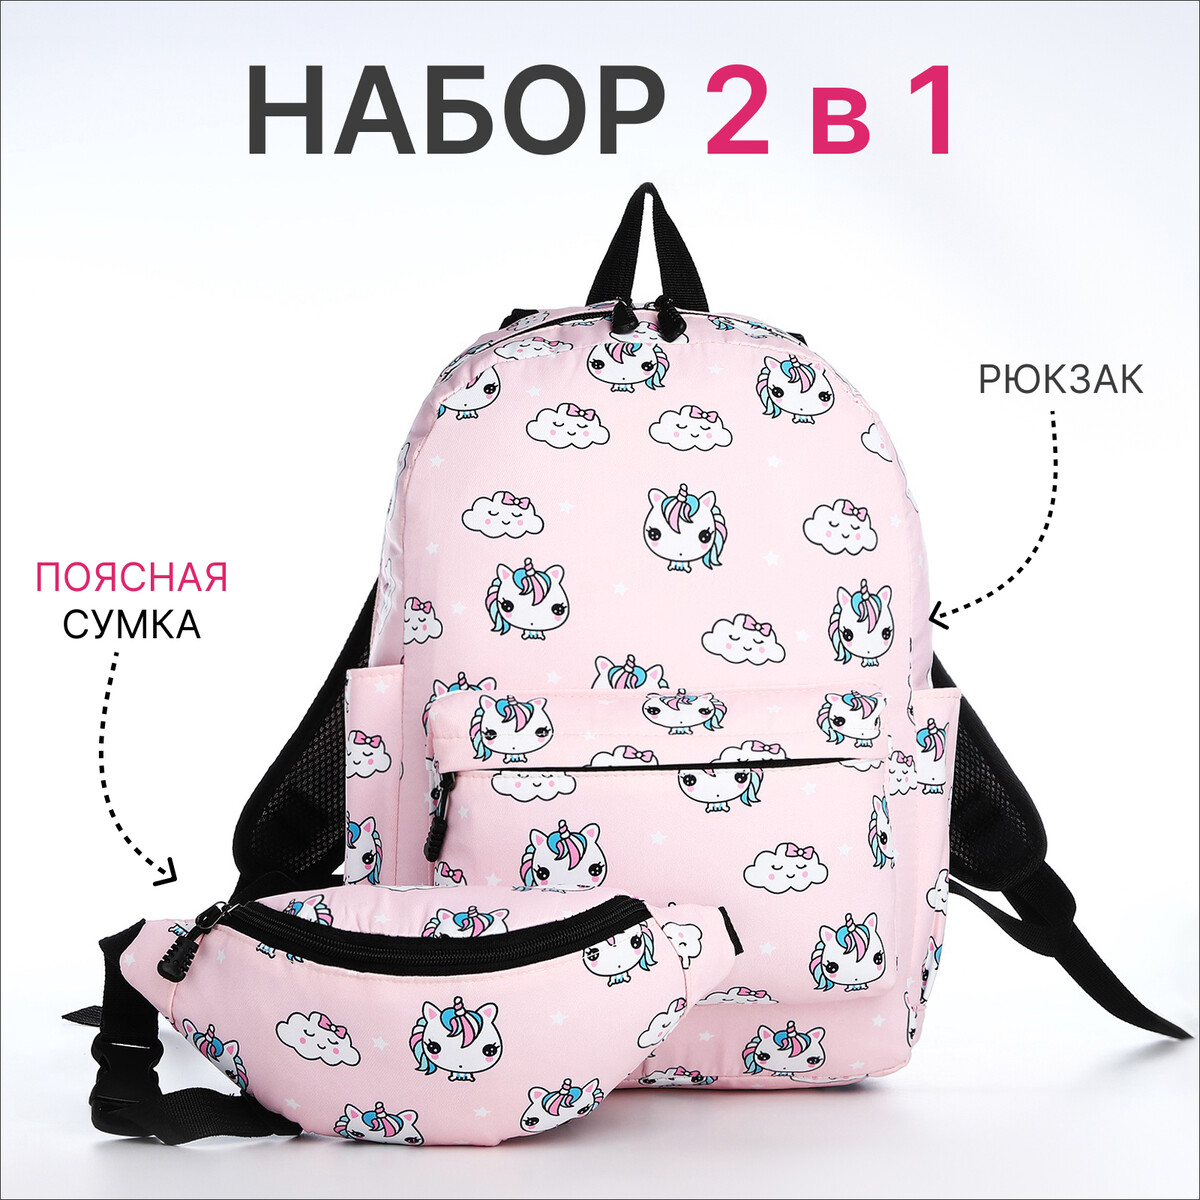 Рюкзак молодежный из текстиля на молнии, 3 кармана, поясная сумка, цвет розовый рюкзак молодежный из текстиля на молнии 3 кармана поясная сумка голубой белый розовый